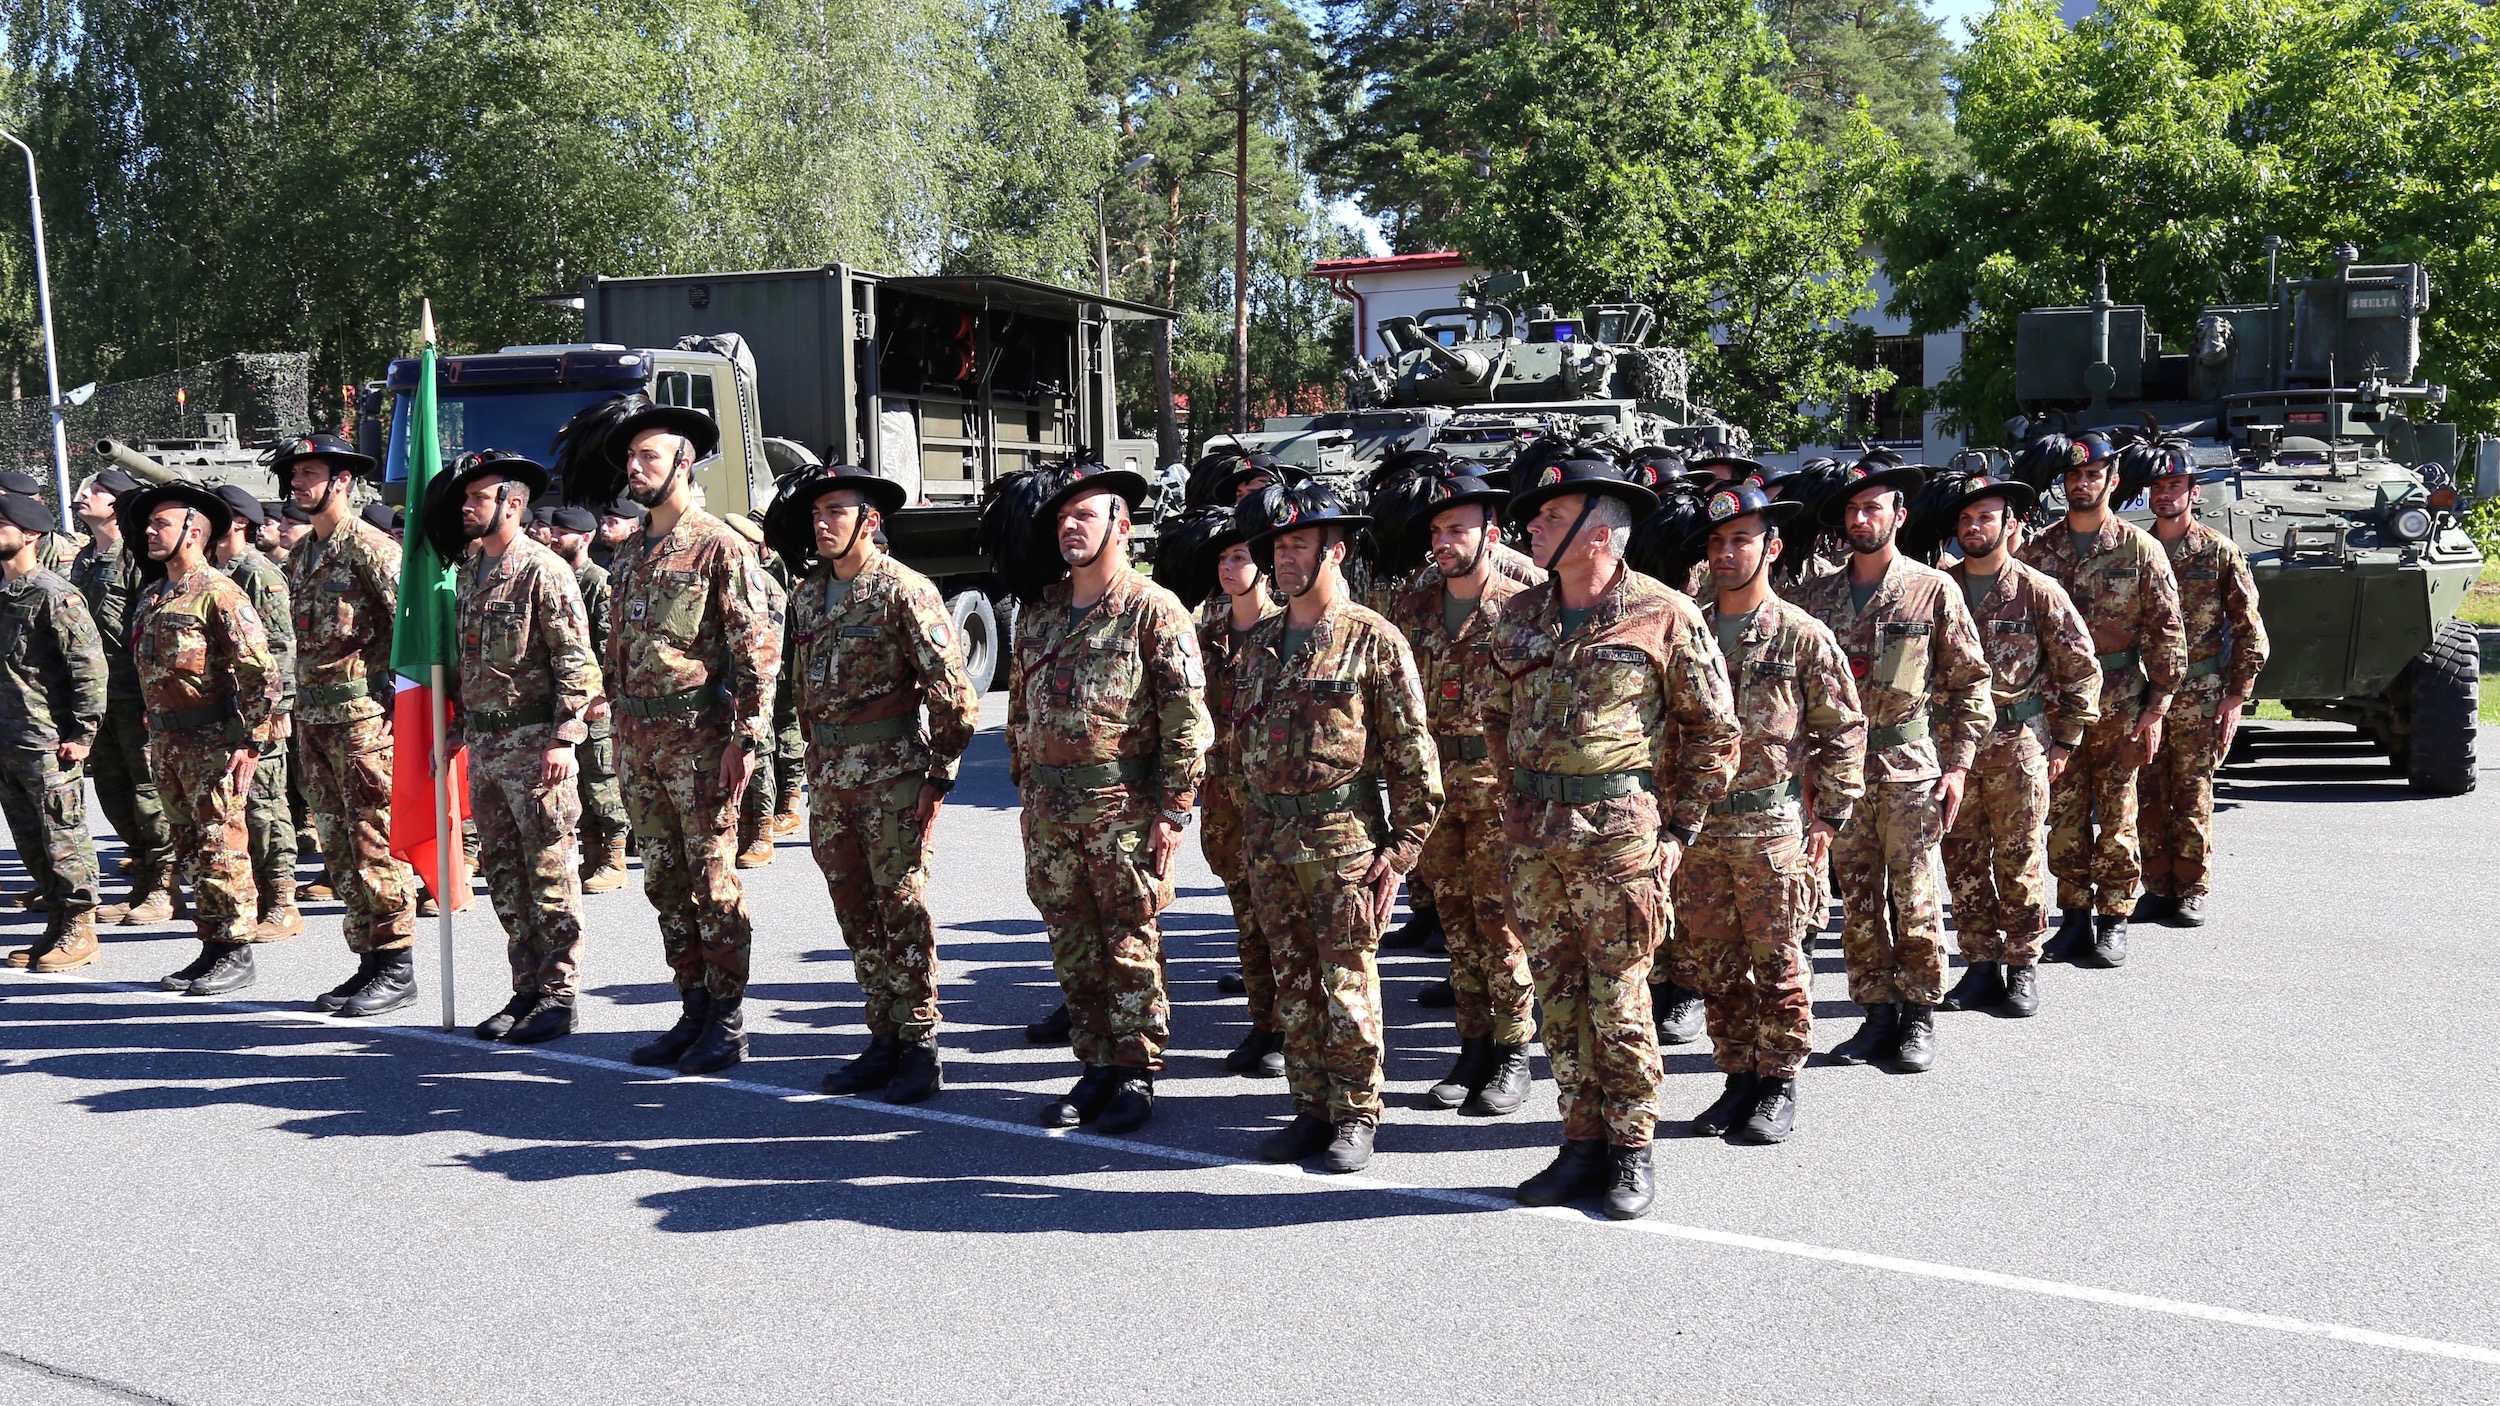 Żołnierze z Włoch służący w batalionie NATO na Łotwie. Fot. Rafał Lesiecki / Defence24.pl